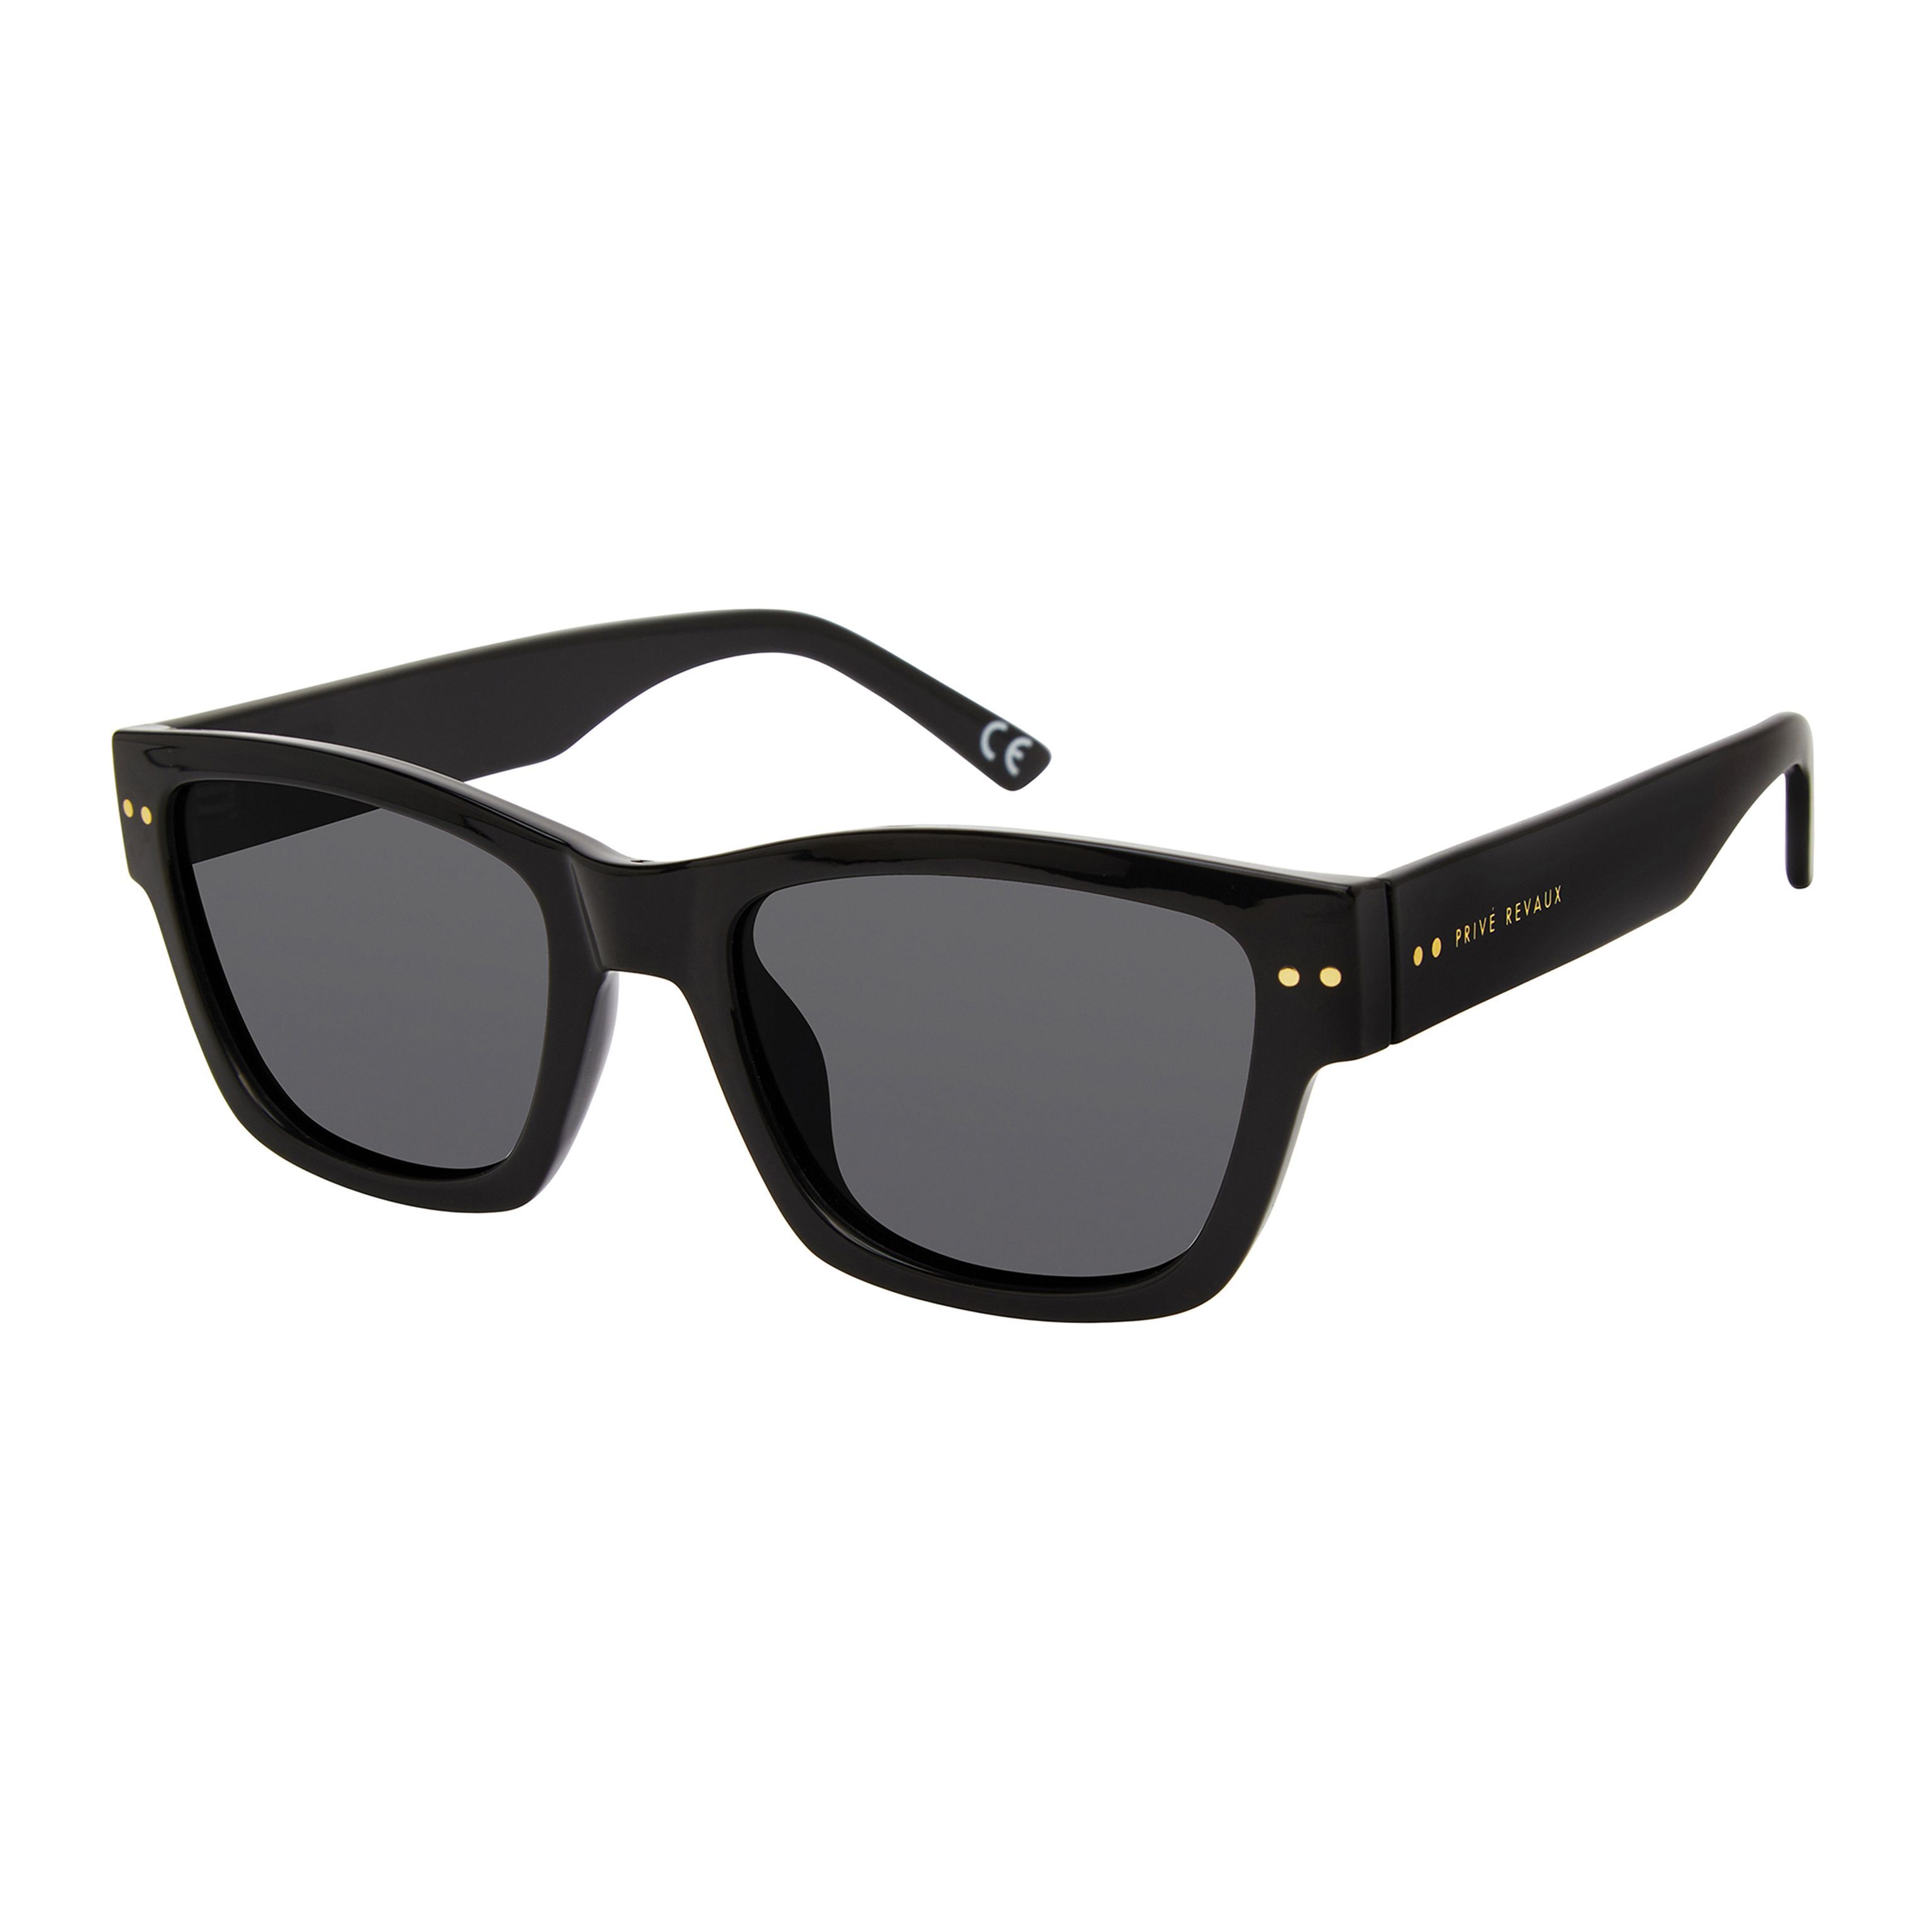 THE ALTON S Square Sunglasses 807 M9 - size 53